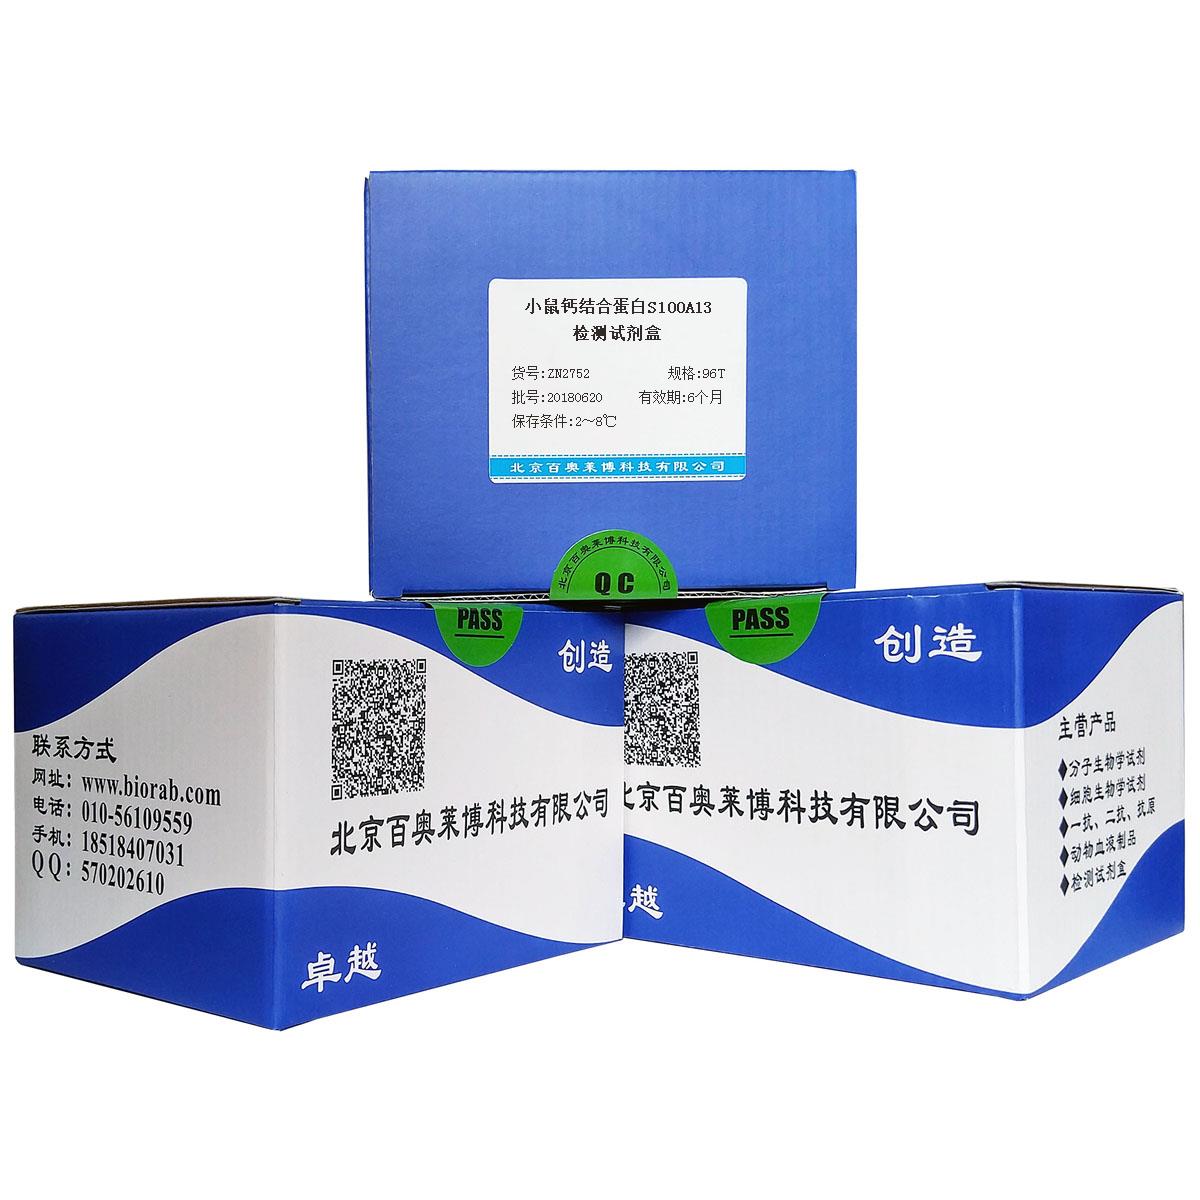 小鼠钙结合蛋白S100A13检测试剂盒 小鼠ELISA试剂盒